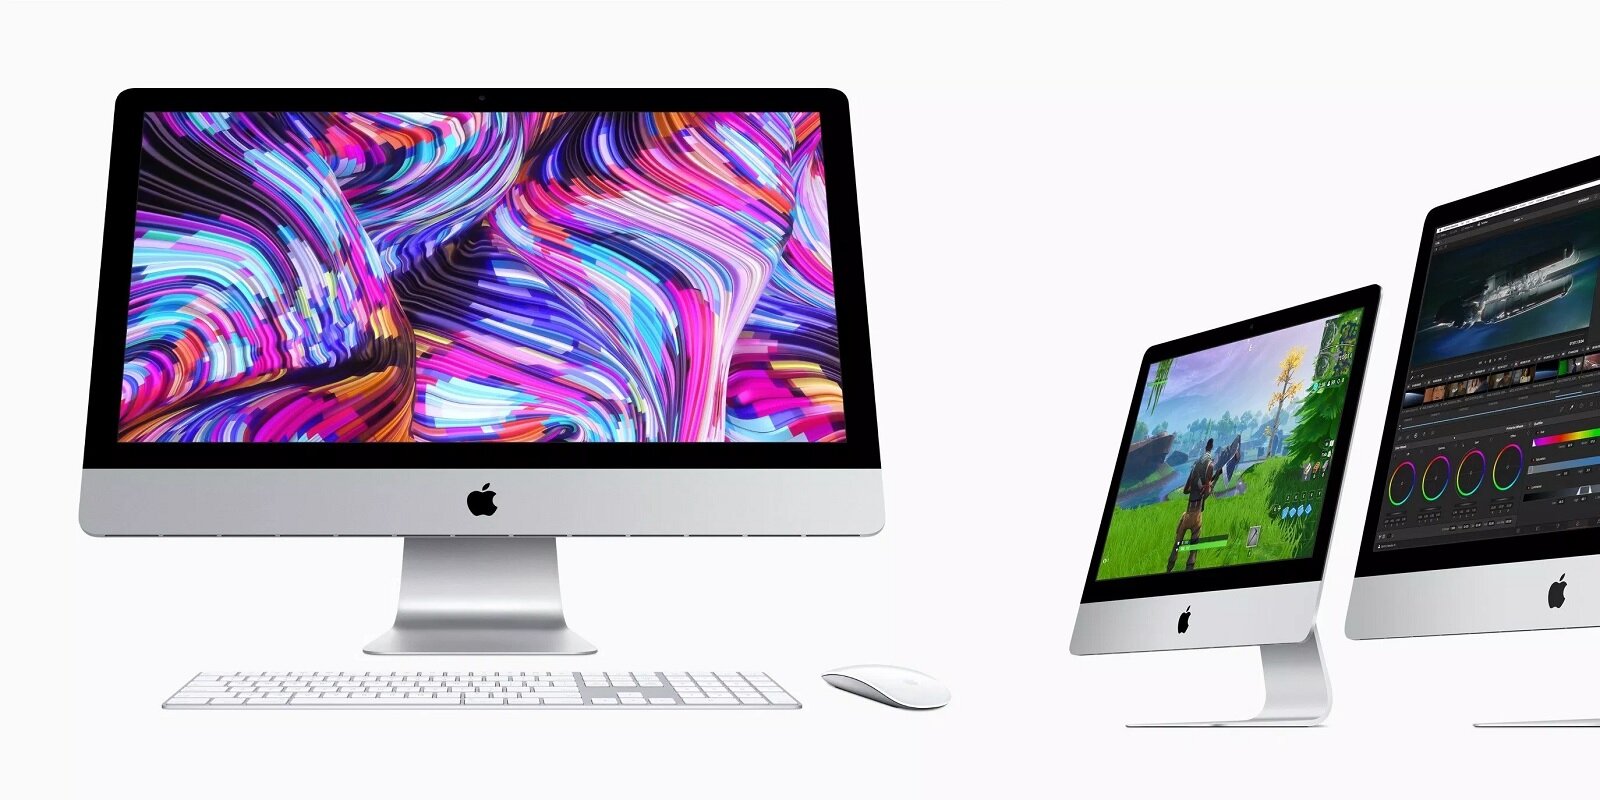 Η Apple αναβαθμίζει τον iMac με 6-core και 8-core Intel CPUs και Radeon Pro Vega GPUs